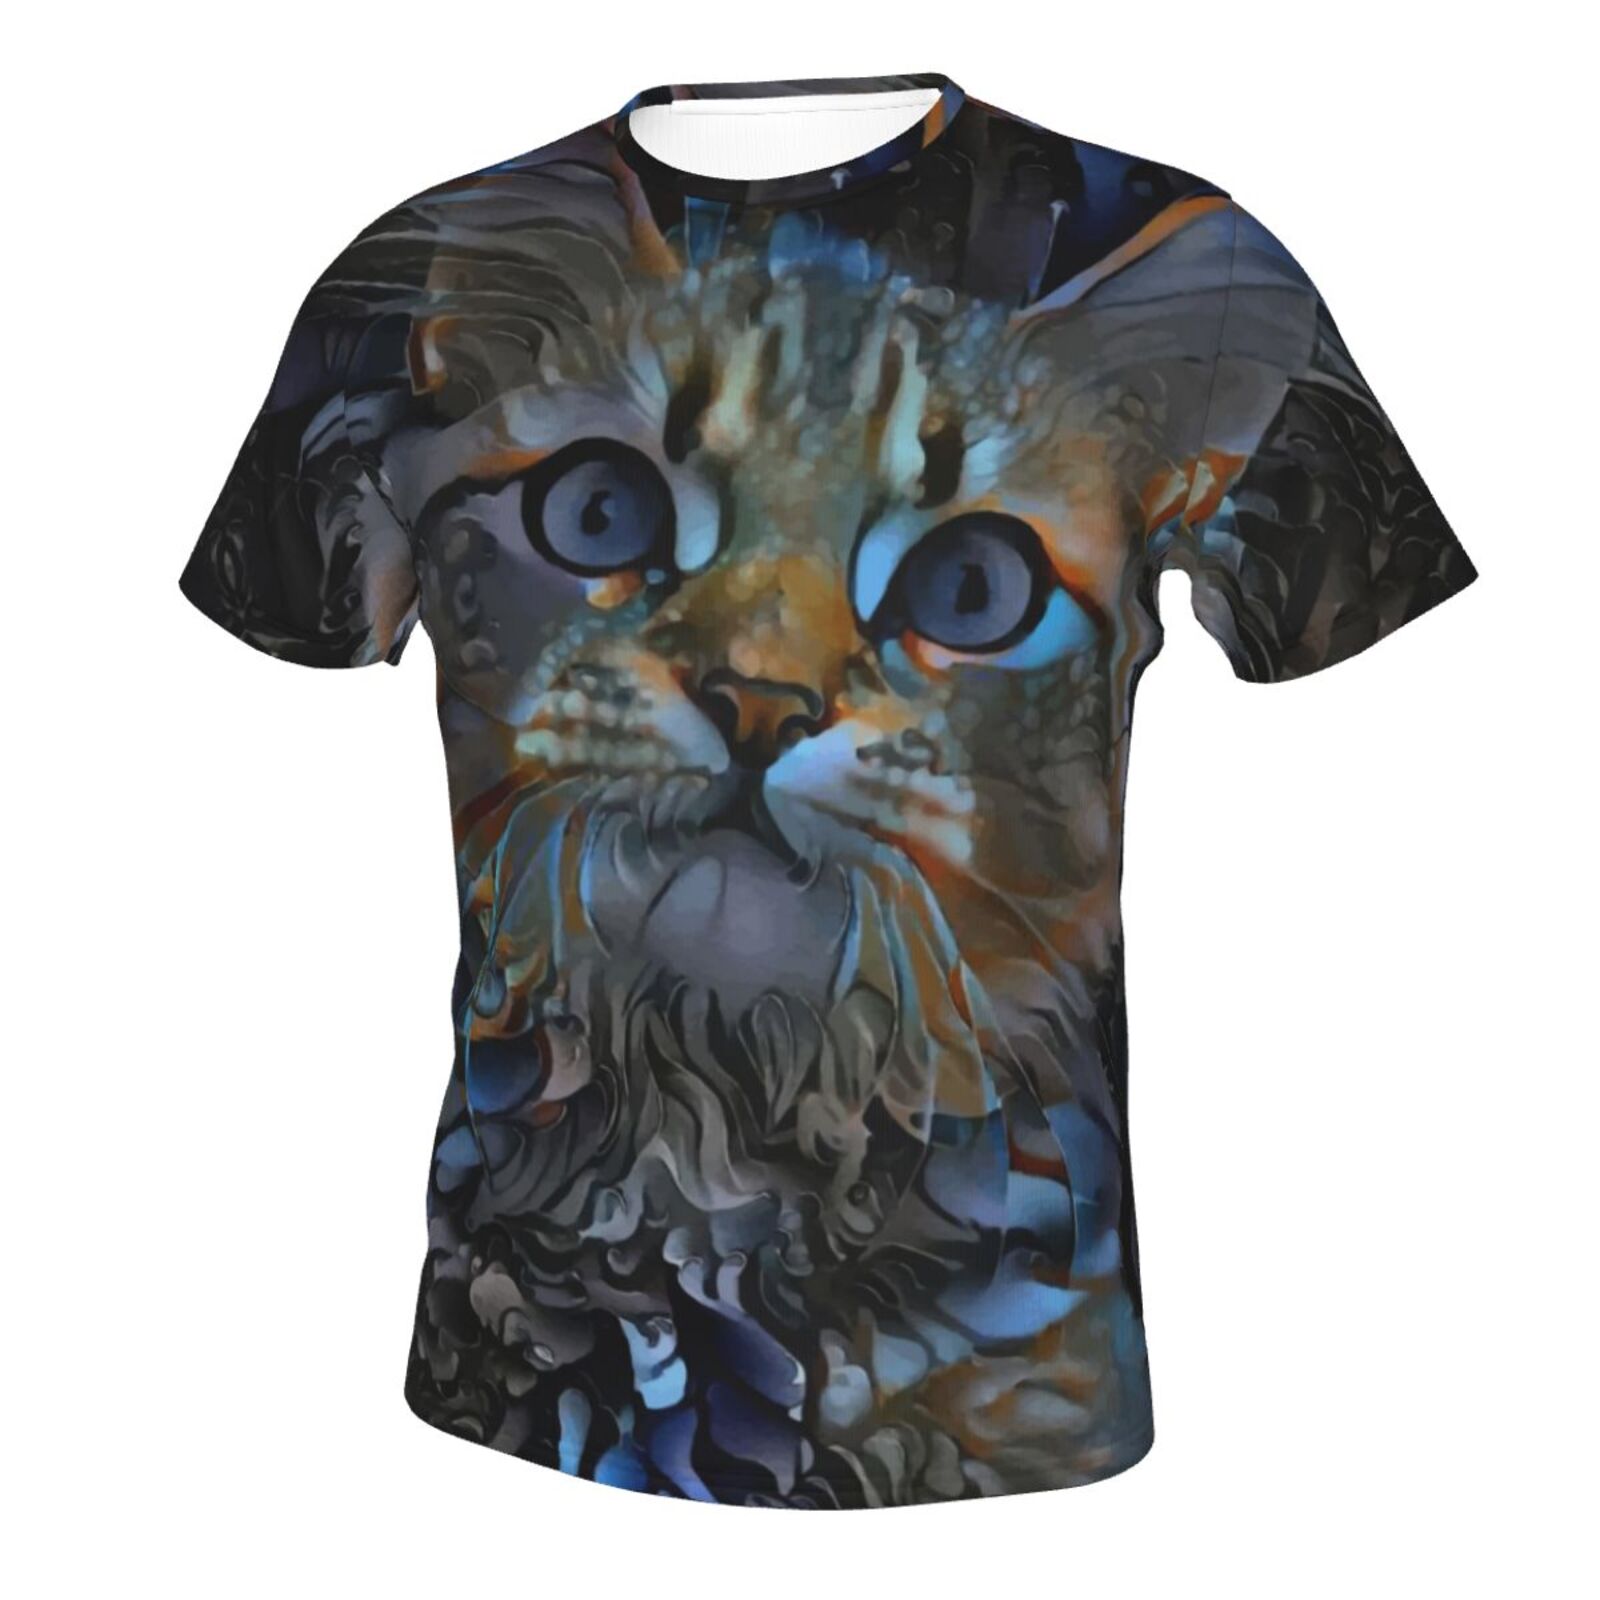 Leyris-kissa Sekoita Mediaelementit Klassinen T-paita